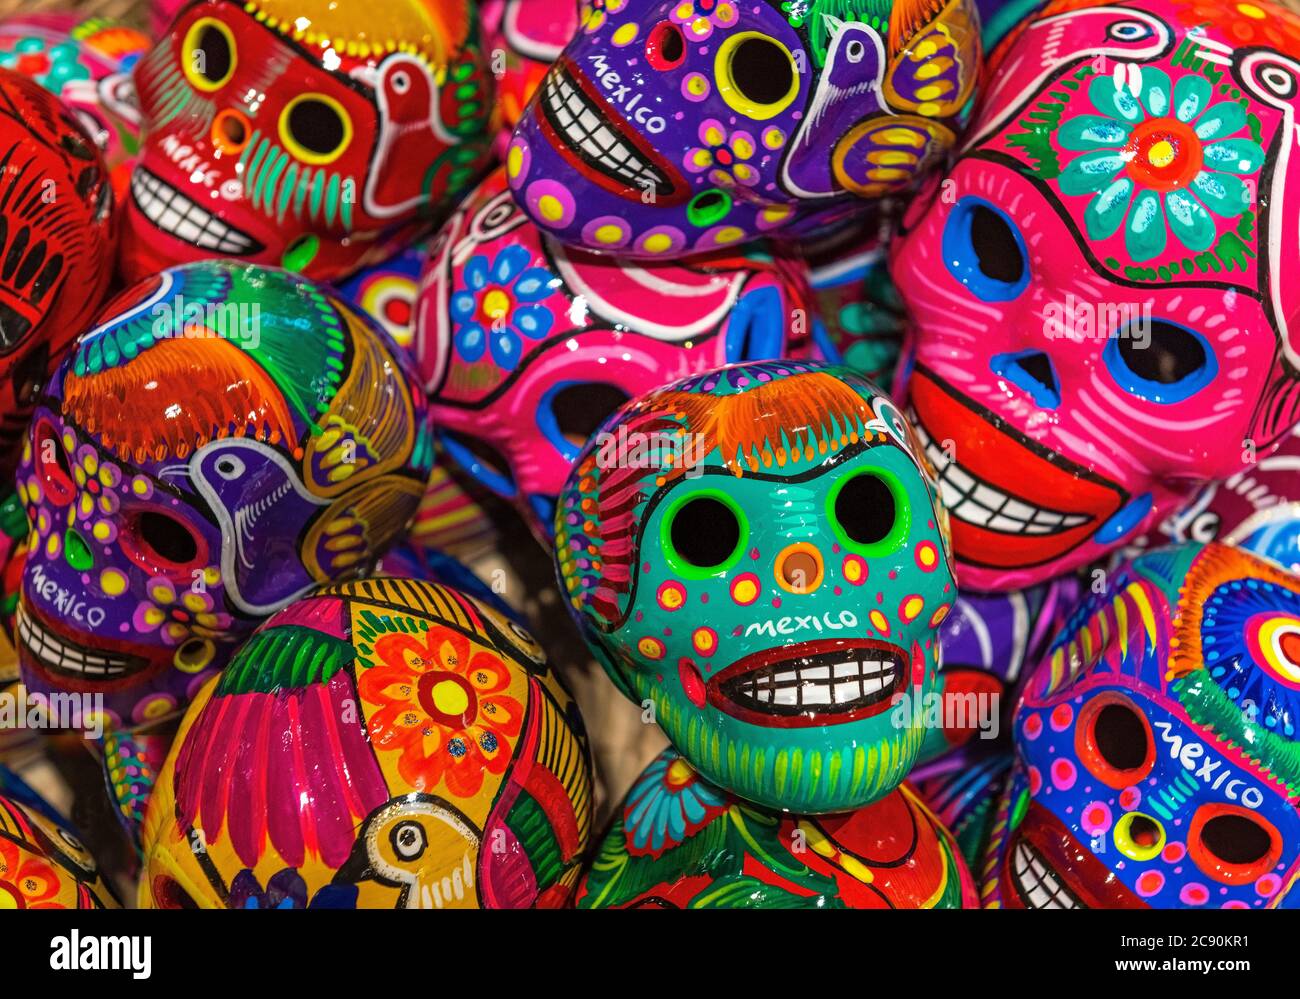 Colorida artesanía mexicana de cerámica de calavera en venta en un mercado local de arte y artesanía, Ciudad de México, México. Foto de stock